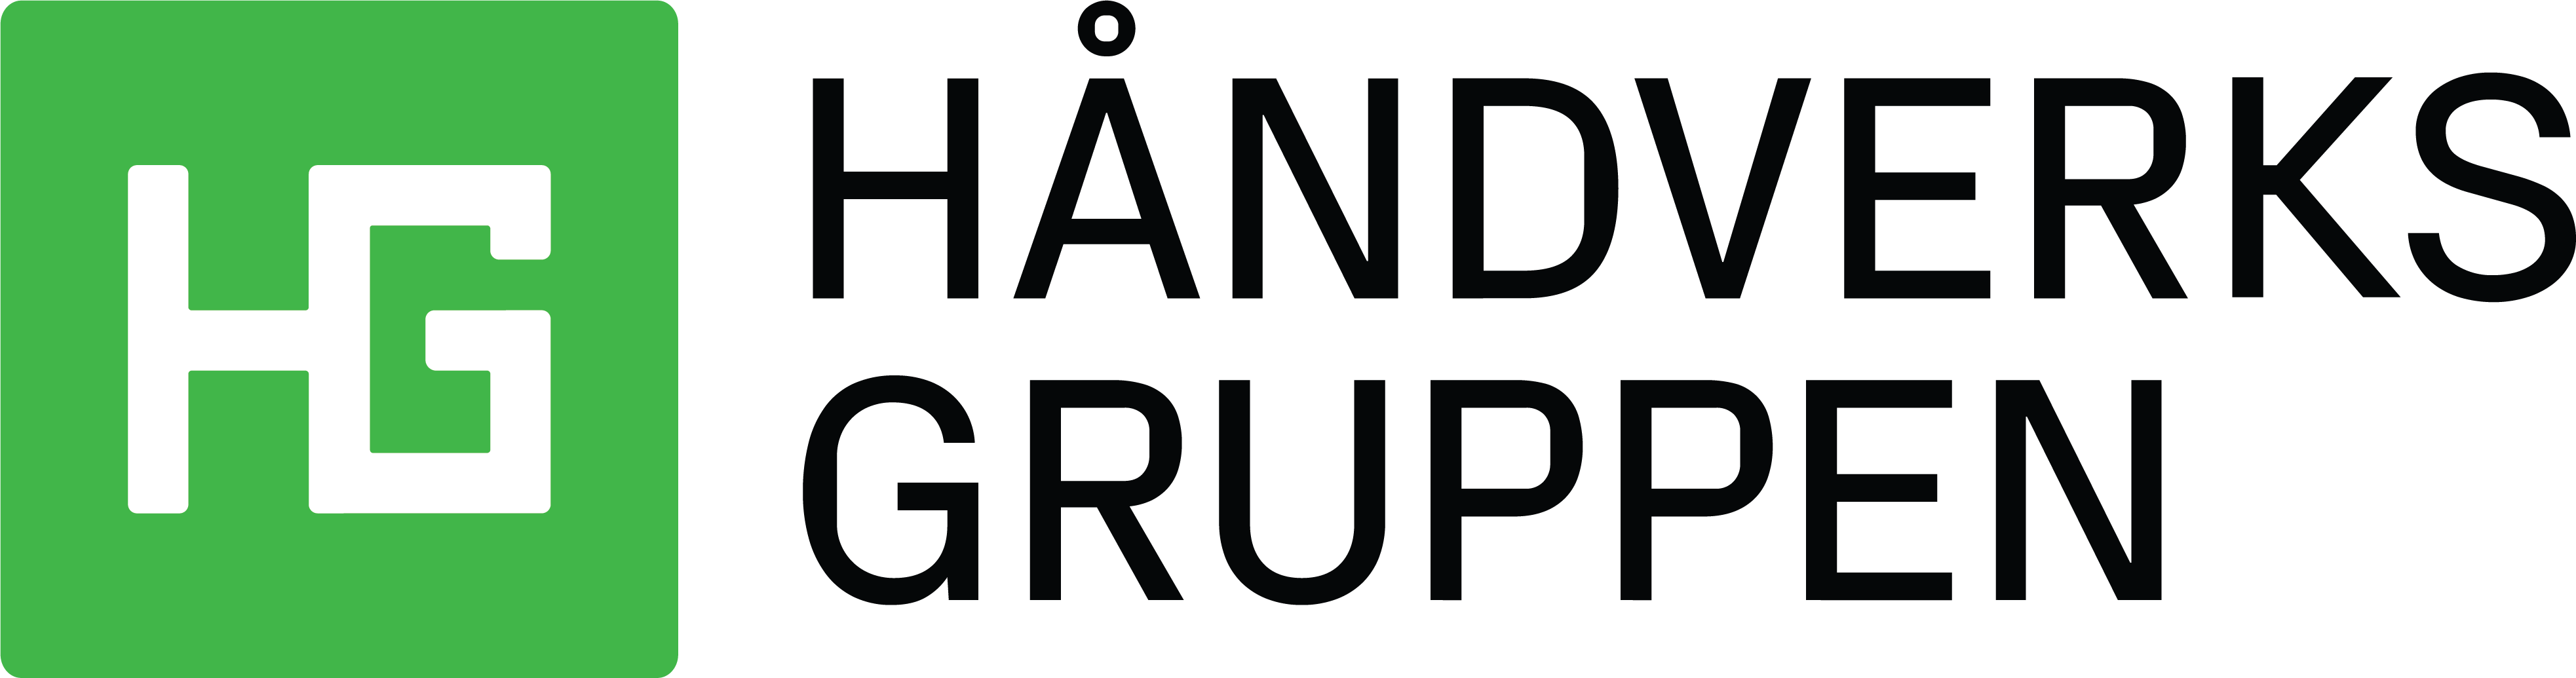 Håndverskgruppen - logo